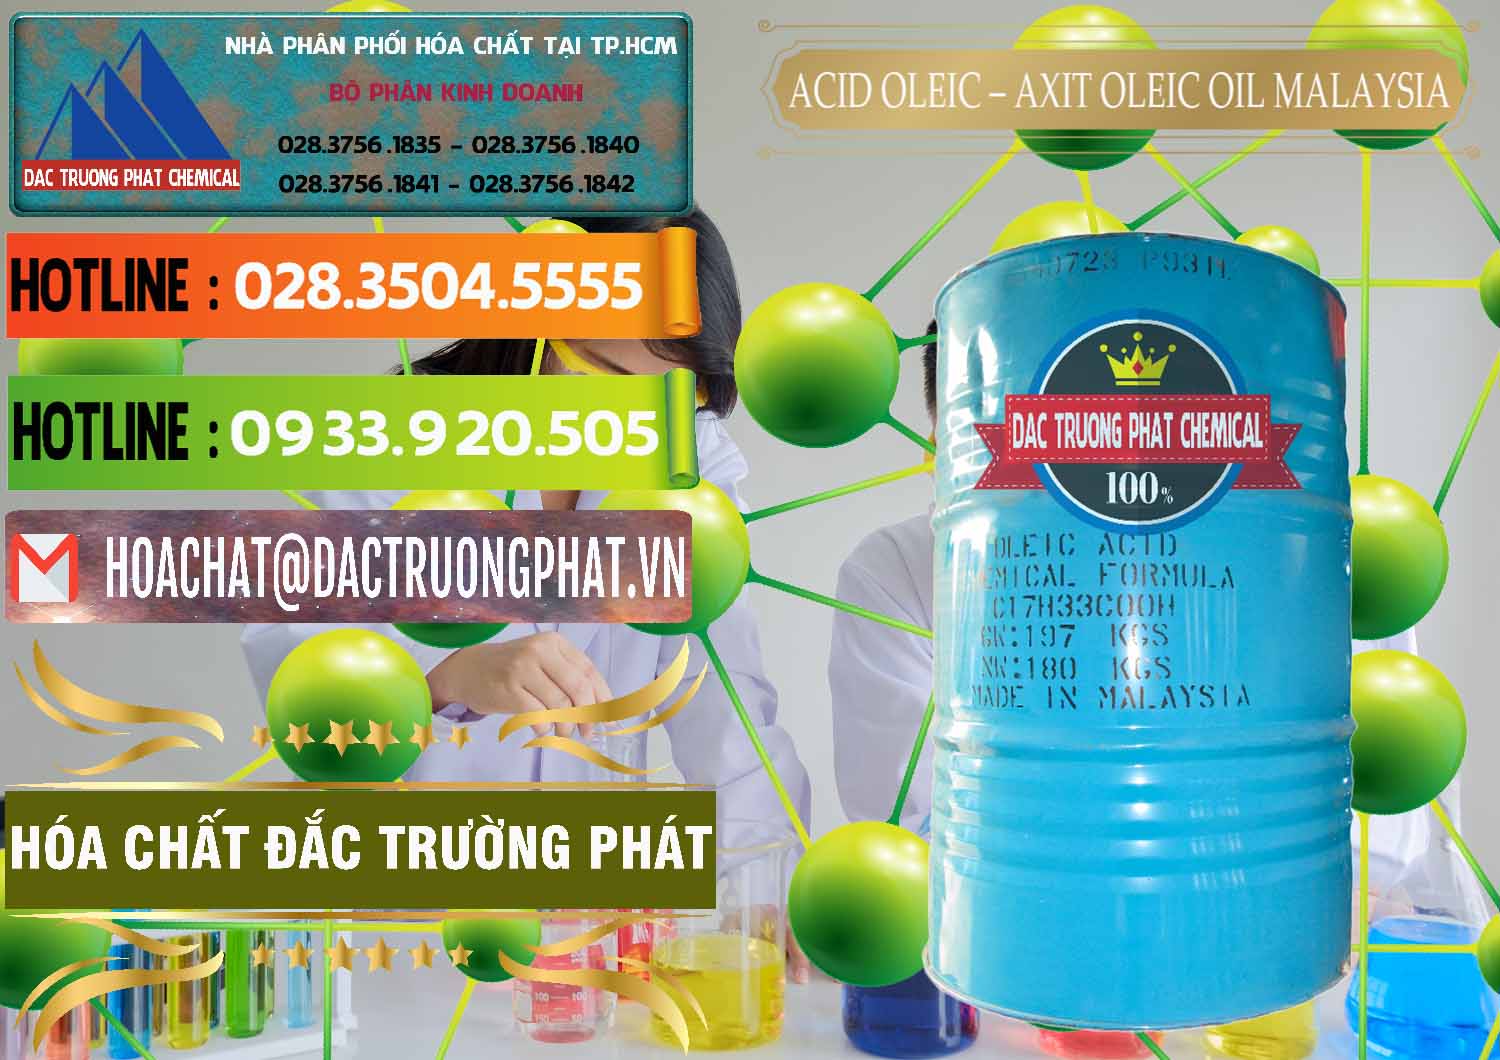 Đơn vị phân phối và bán Acid Oleic – Axit Oleic Oil Malaysia - 0013 - Cty kinh doanh ( cung cấp ) hóa chất tại TP.HCM - cungcaphoachat.com.vn